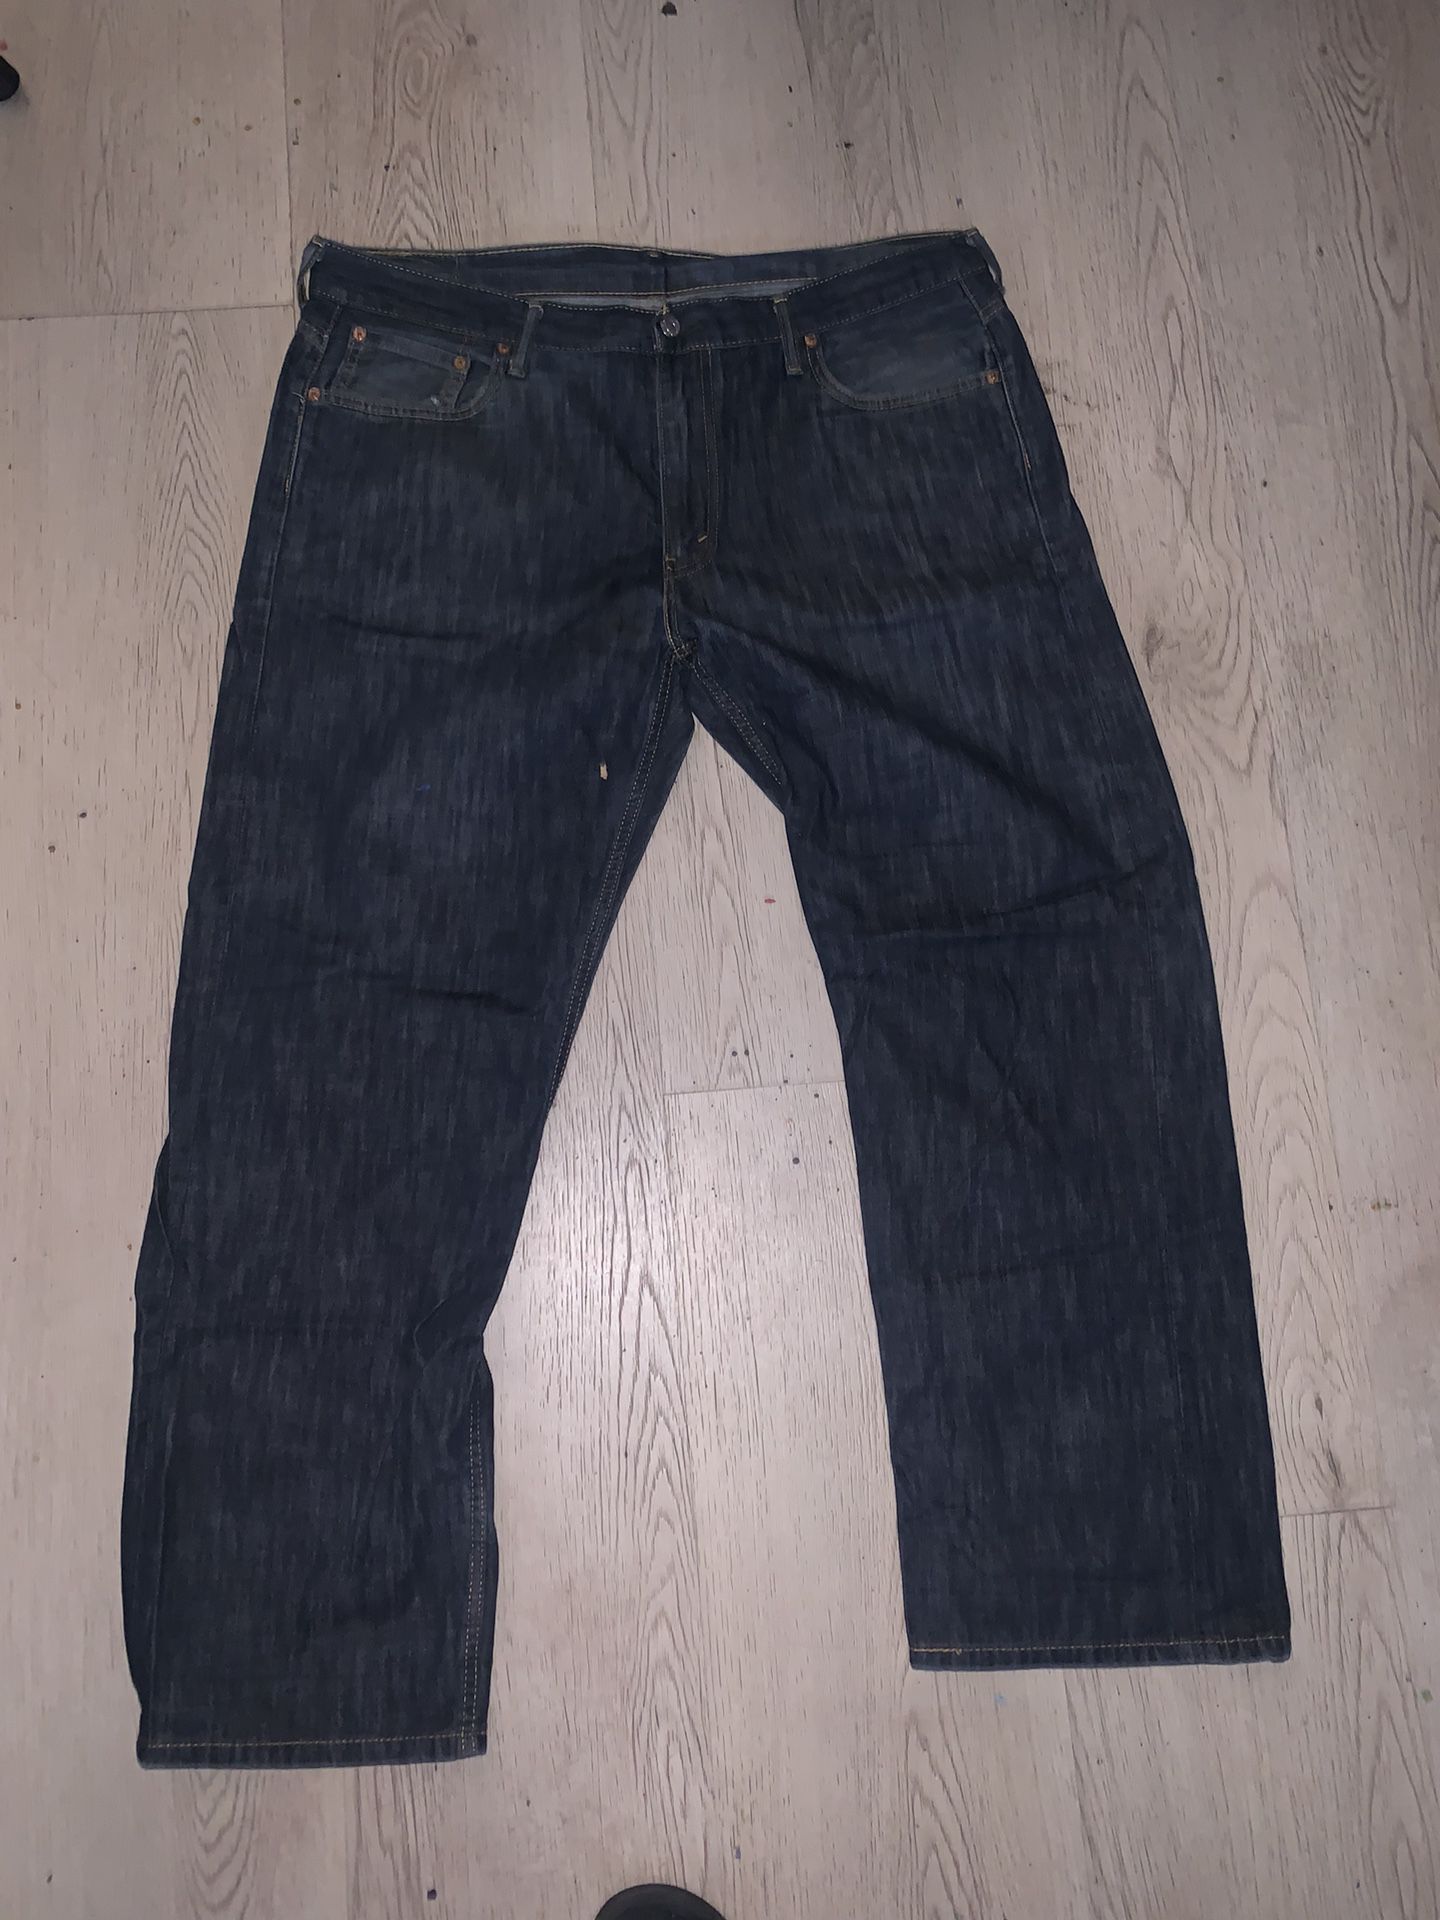 Men’s Levi Jeans Size 36x32